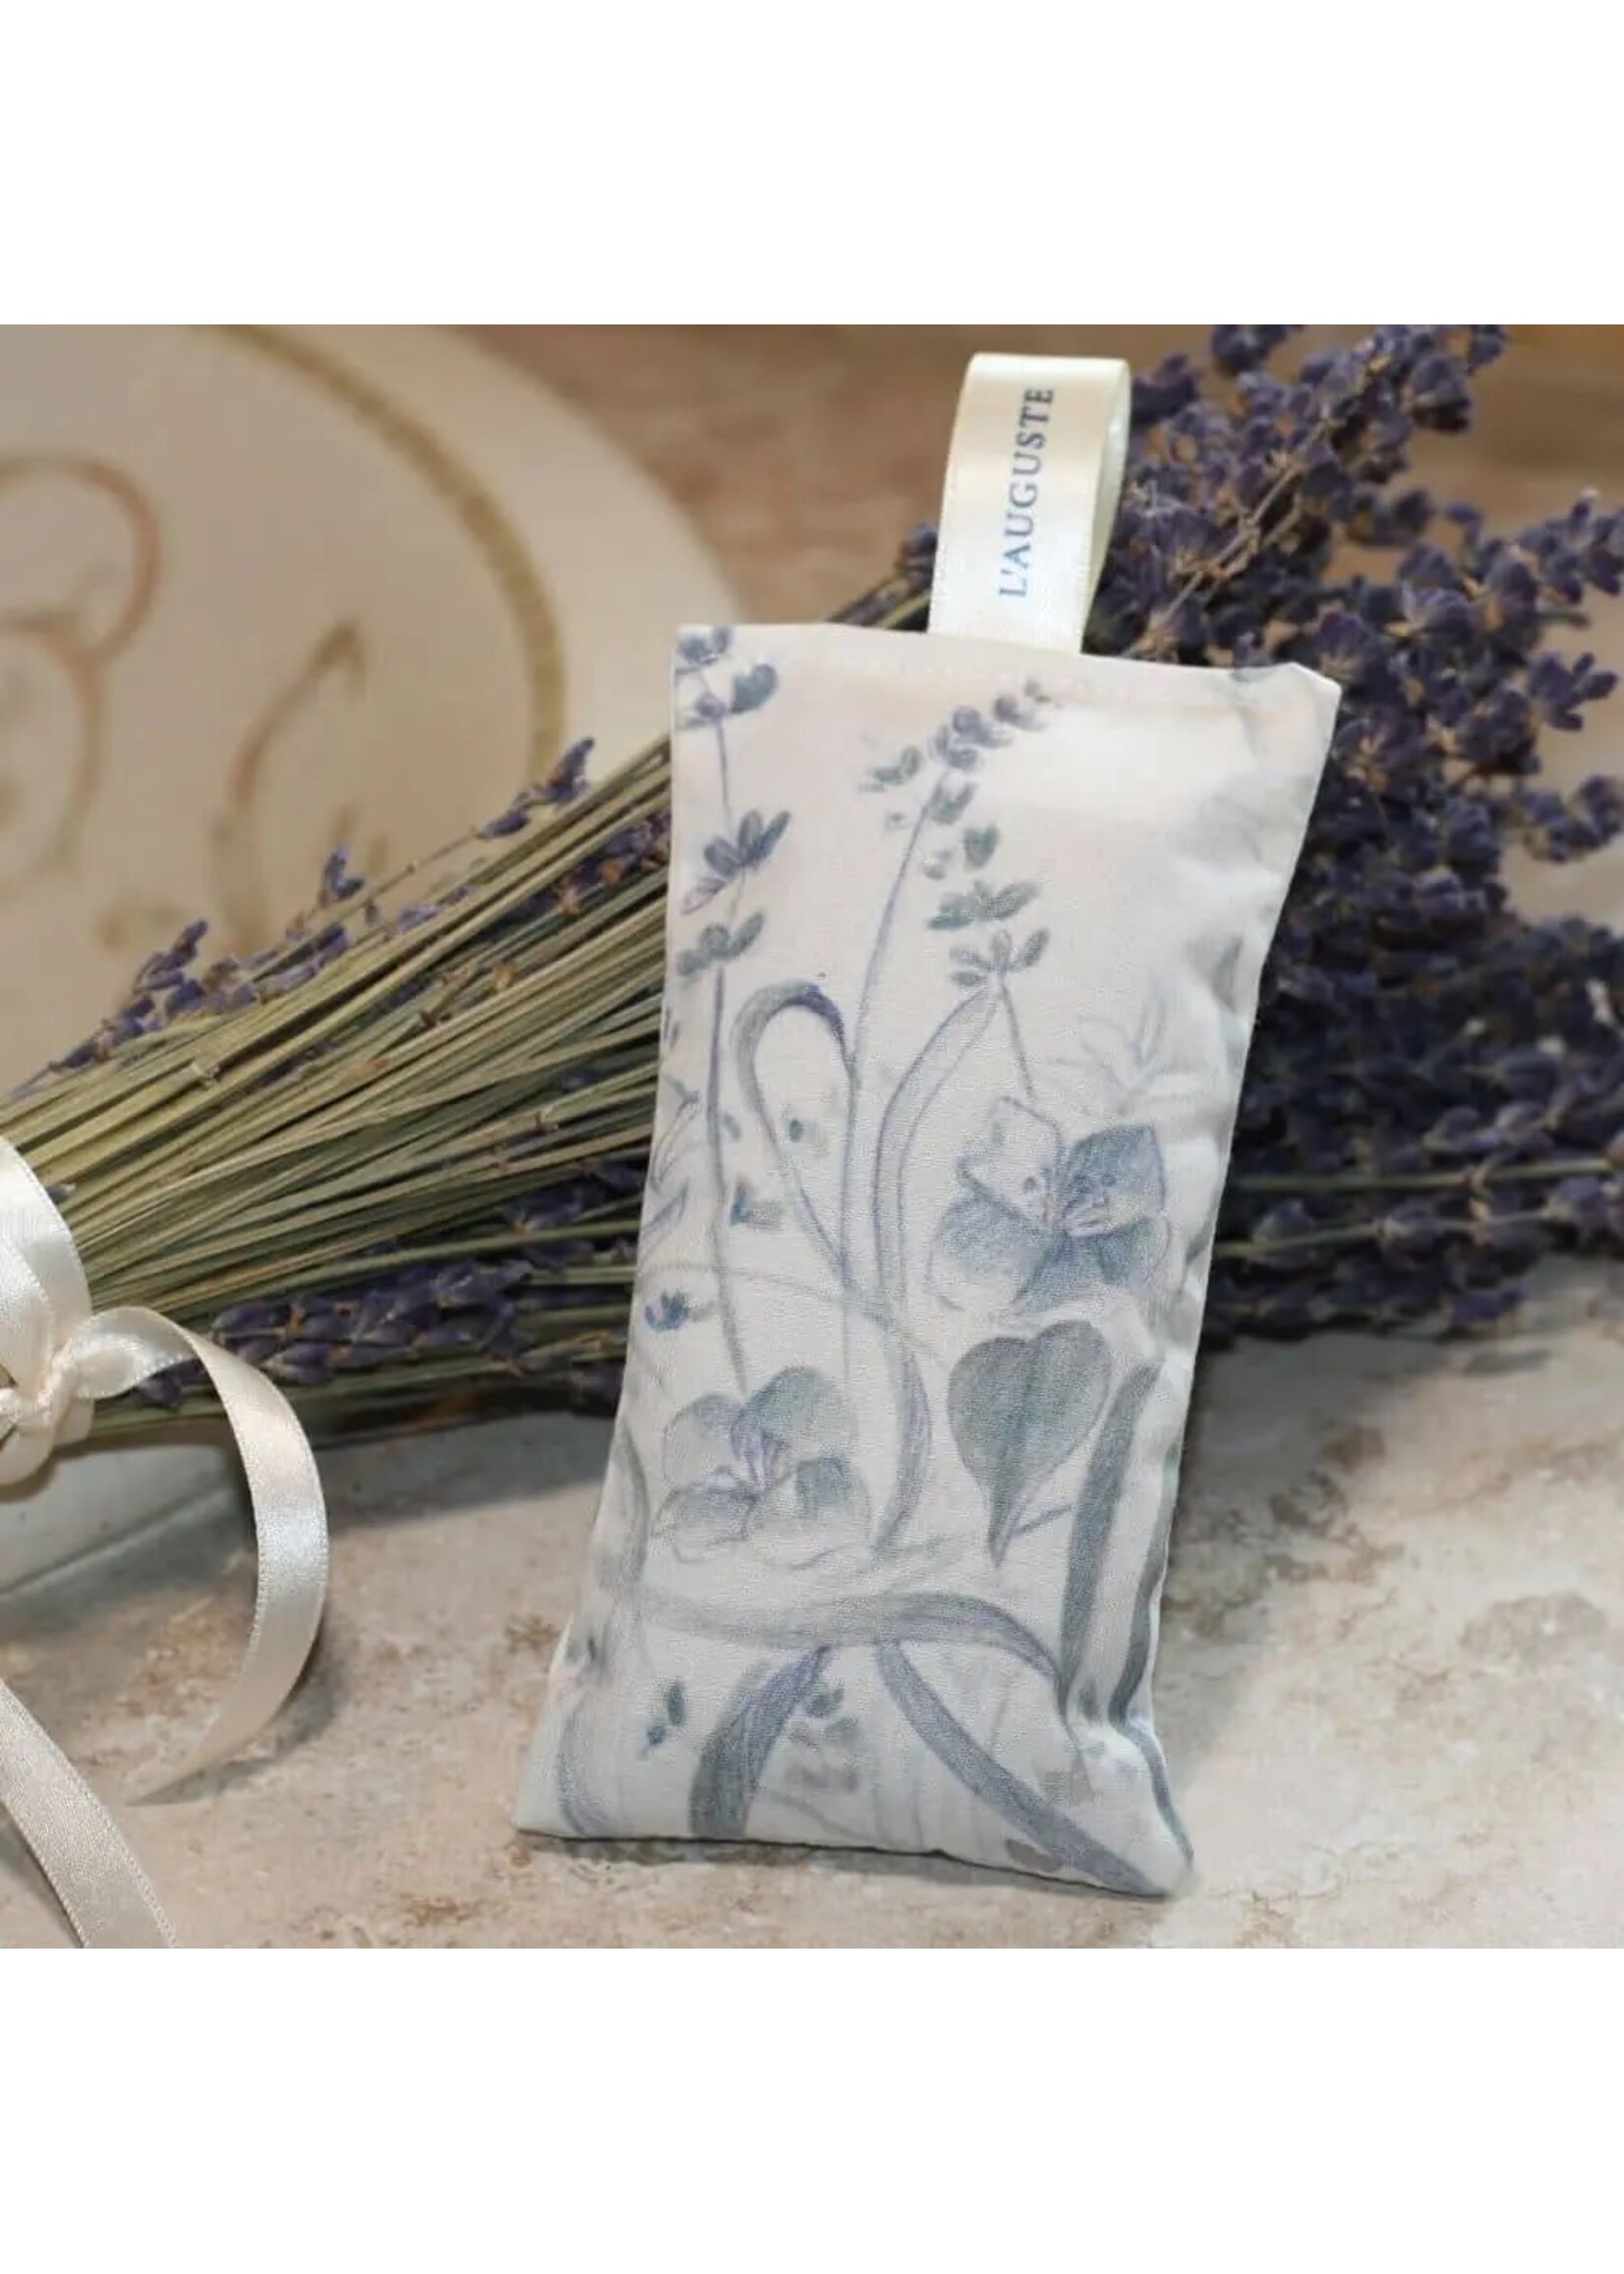 Lavender Sachet from Provence - Lavender Rose